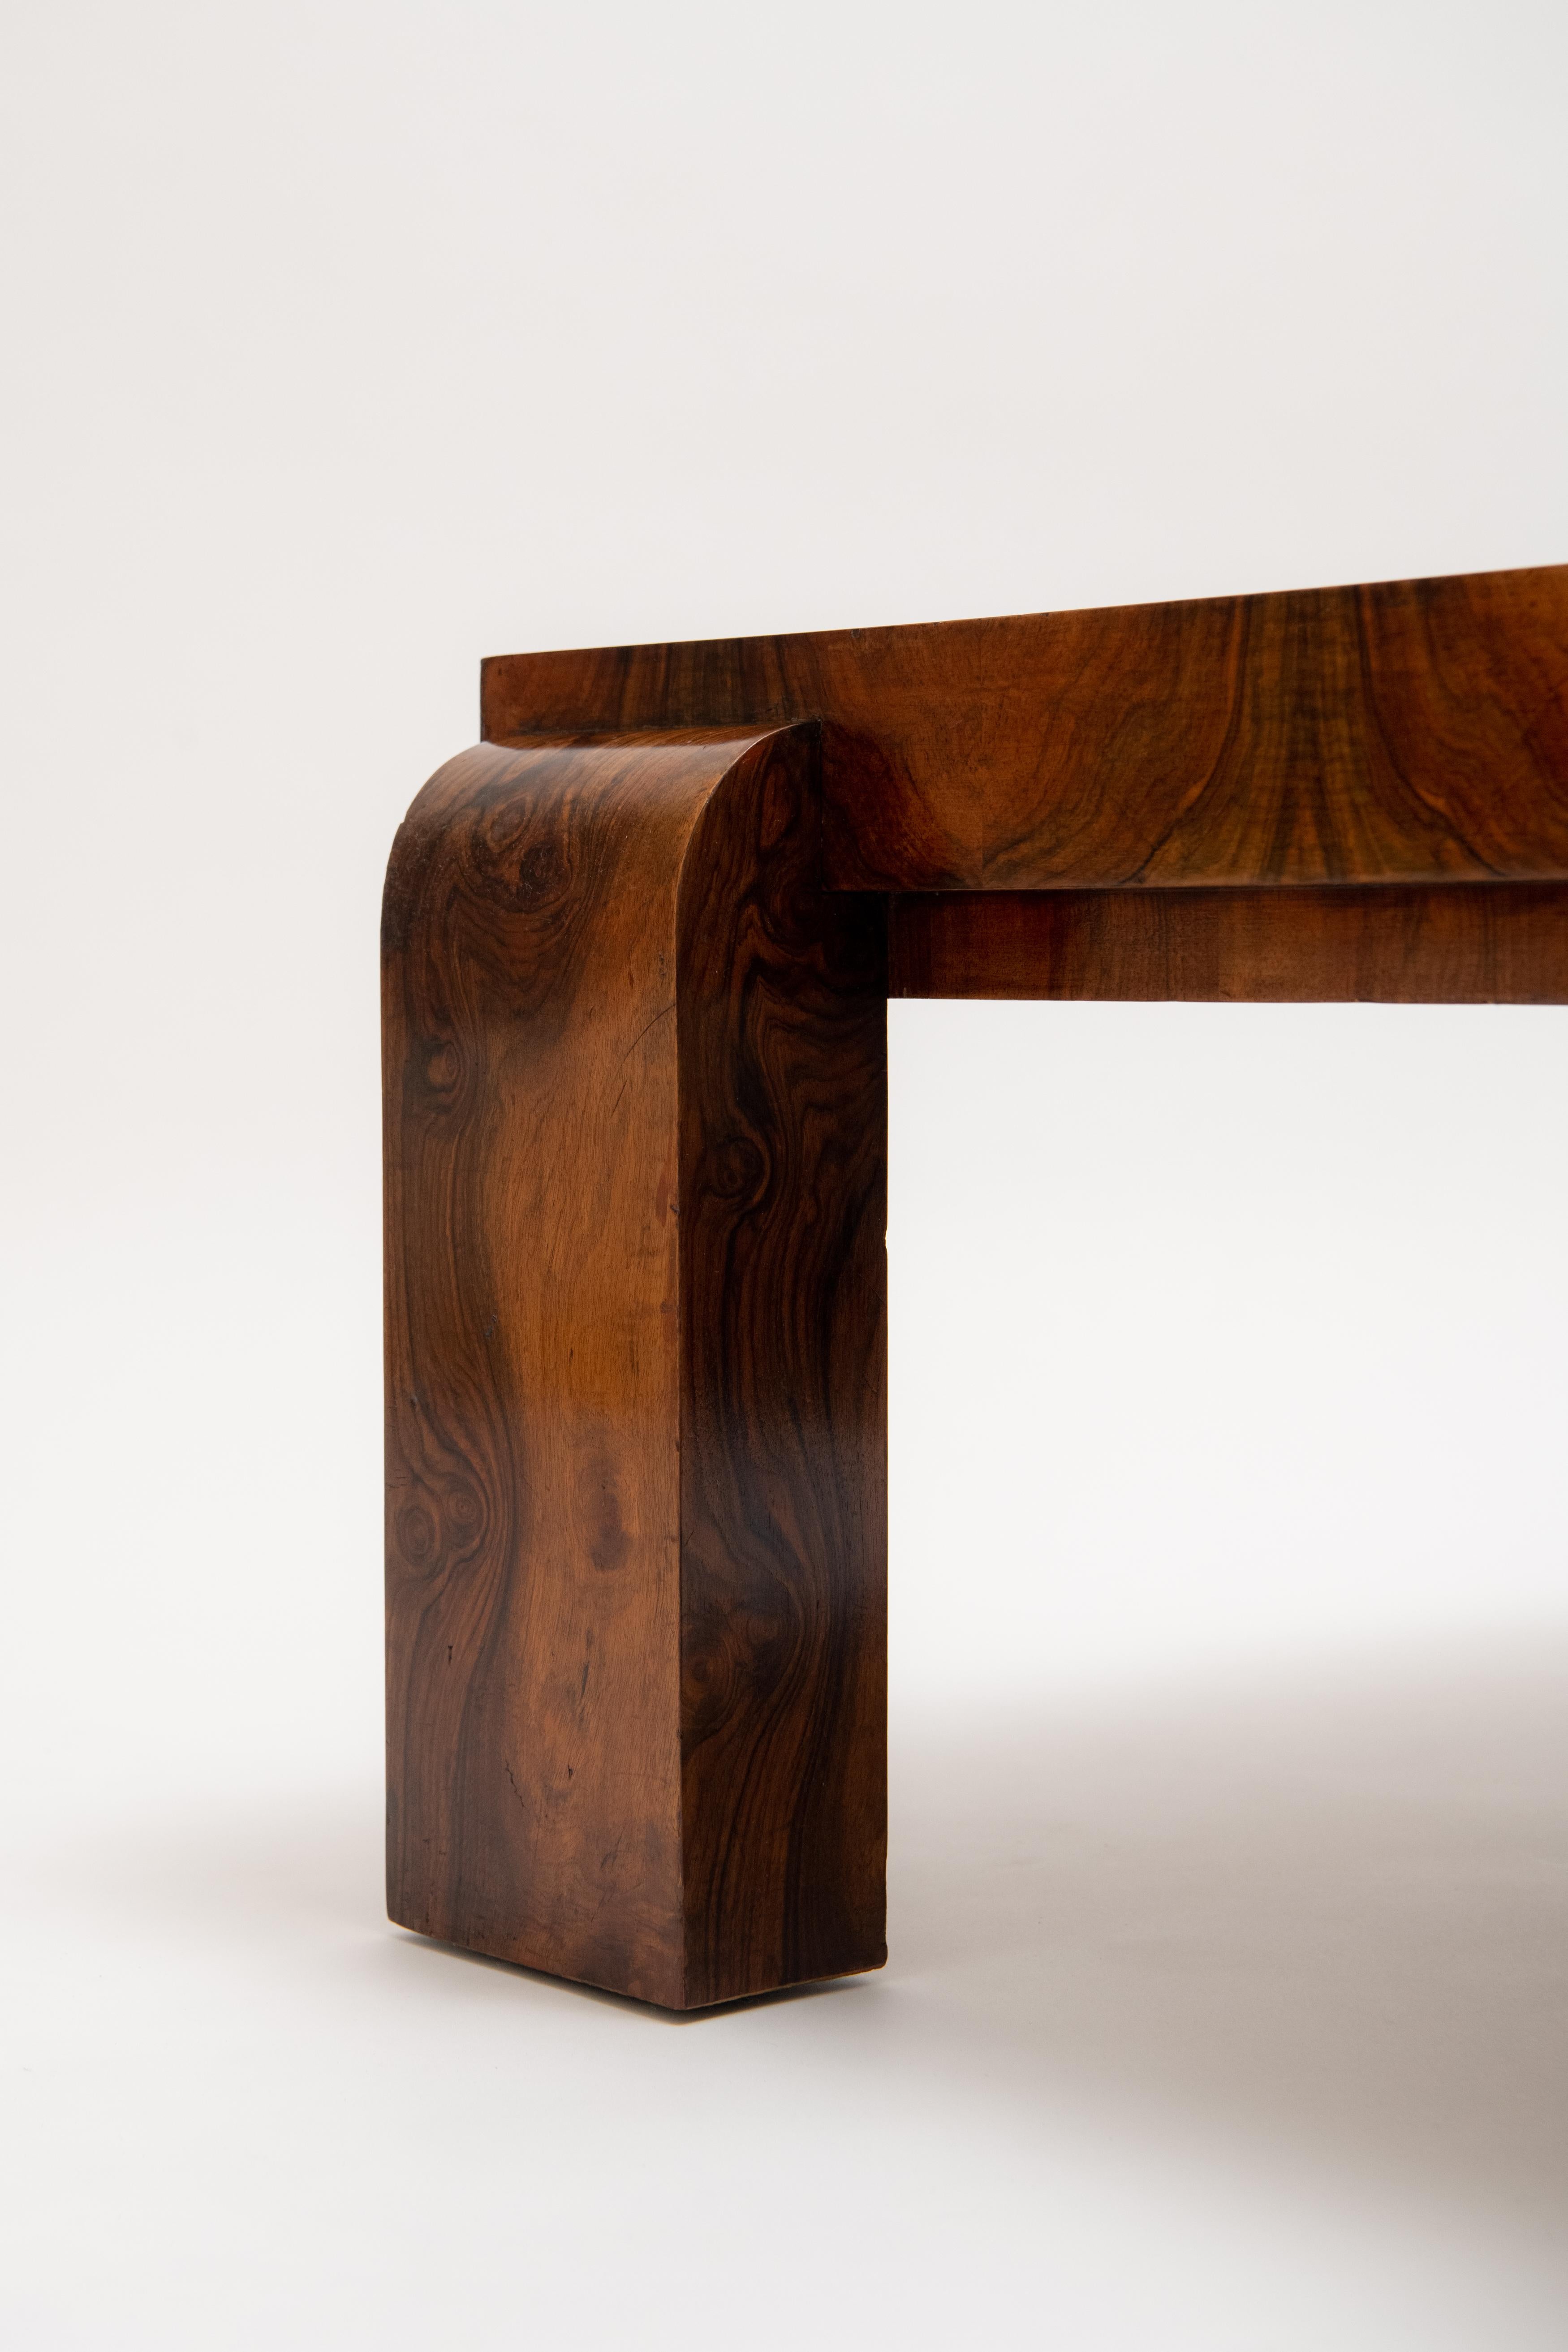 Michel Dufet, Art Deco Low Table, c. 1930 1